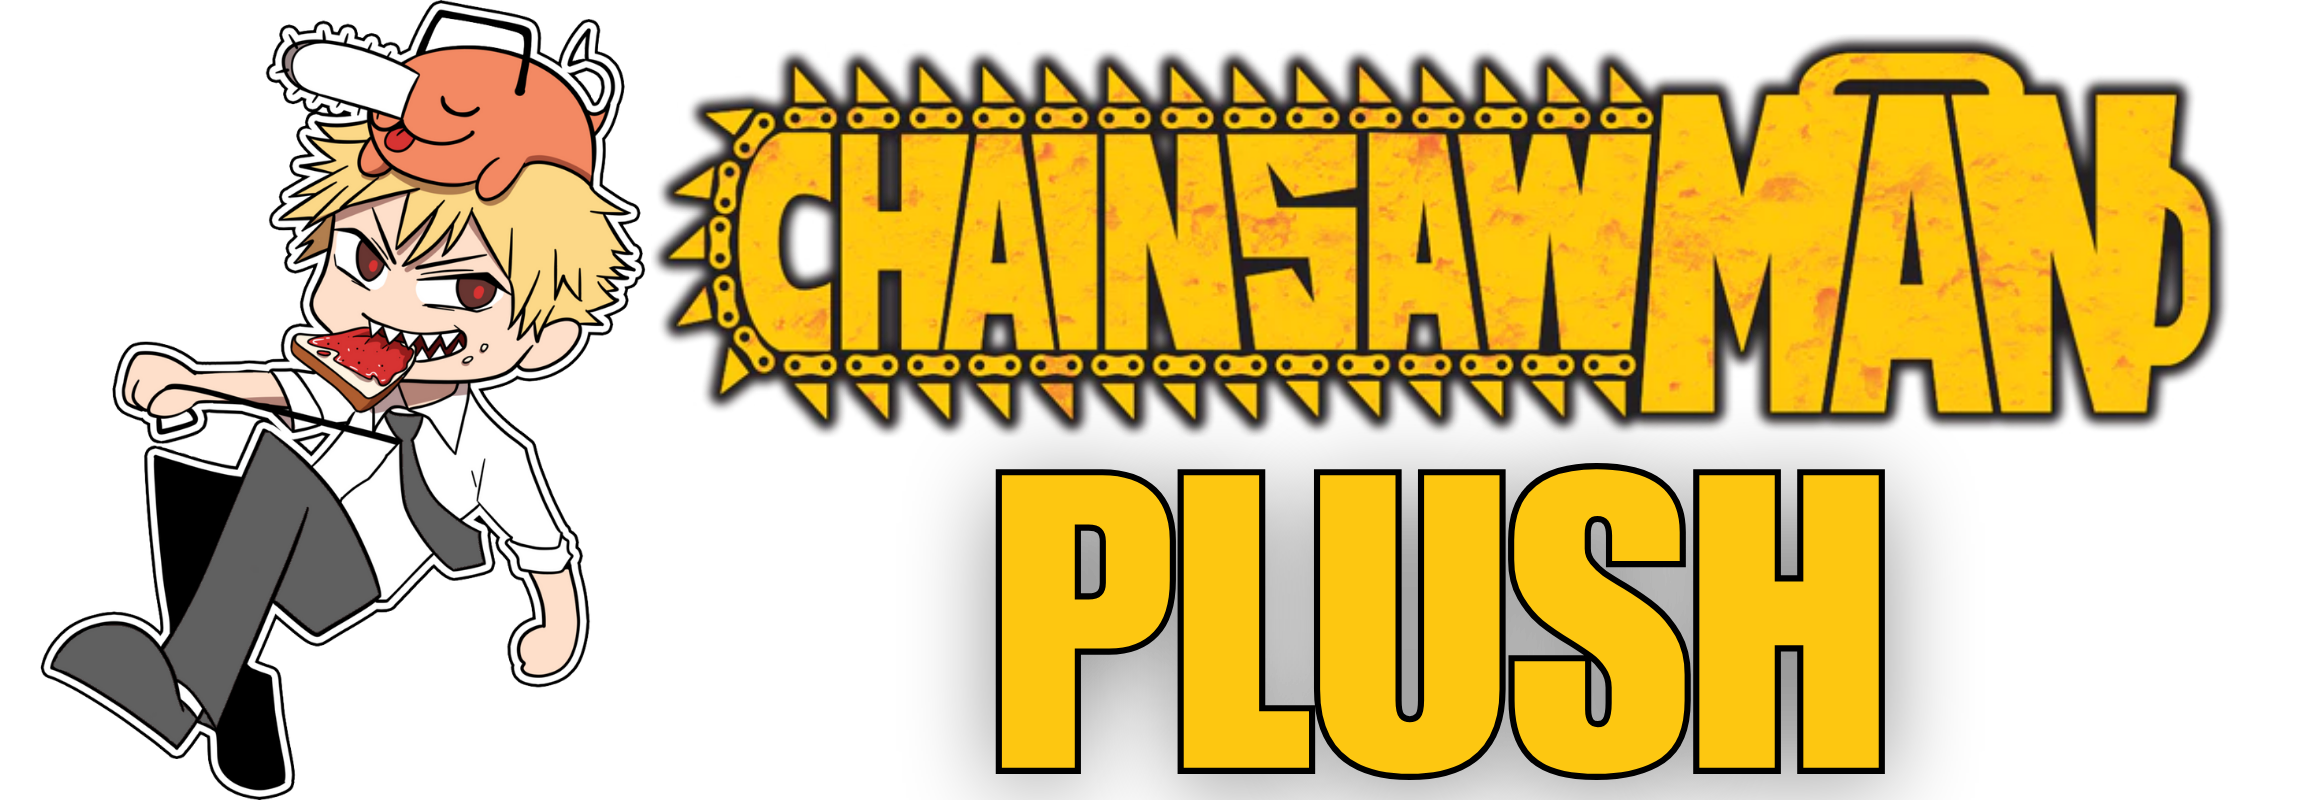 chainsaw man plush - Chainsaw Man Plush